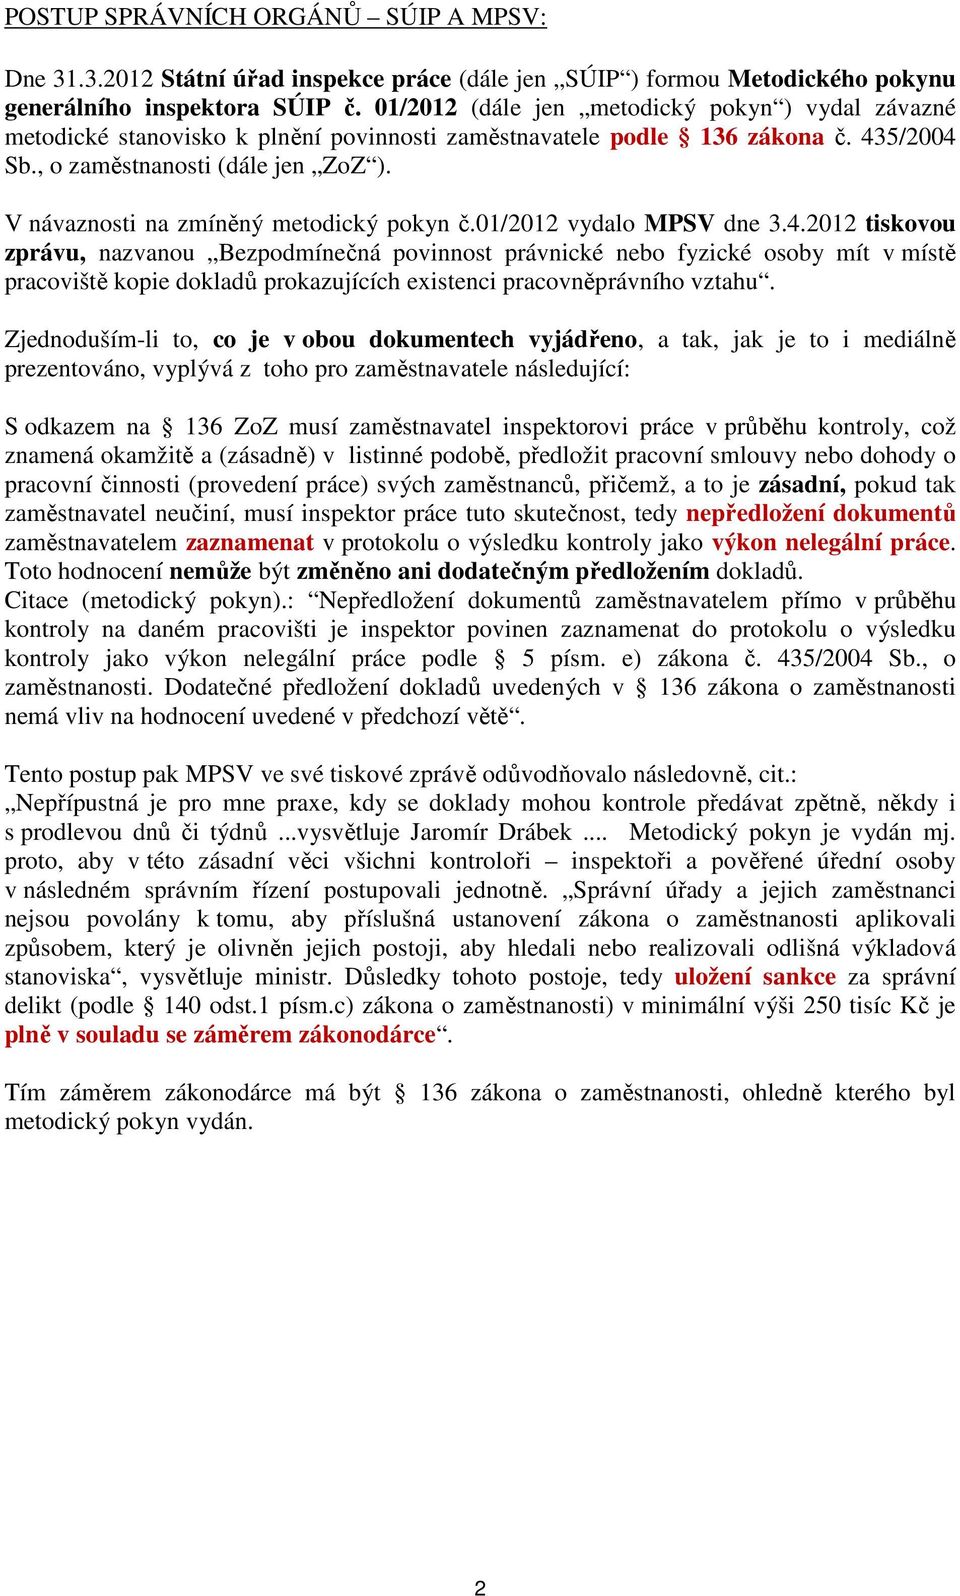 V návaznosti na zmíněný metodický pokyn č.01/2012 vydalo MPSV dne 3.4.